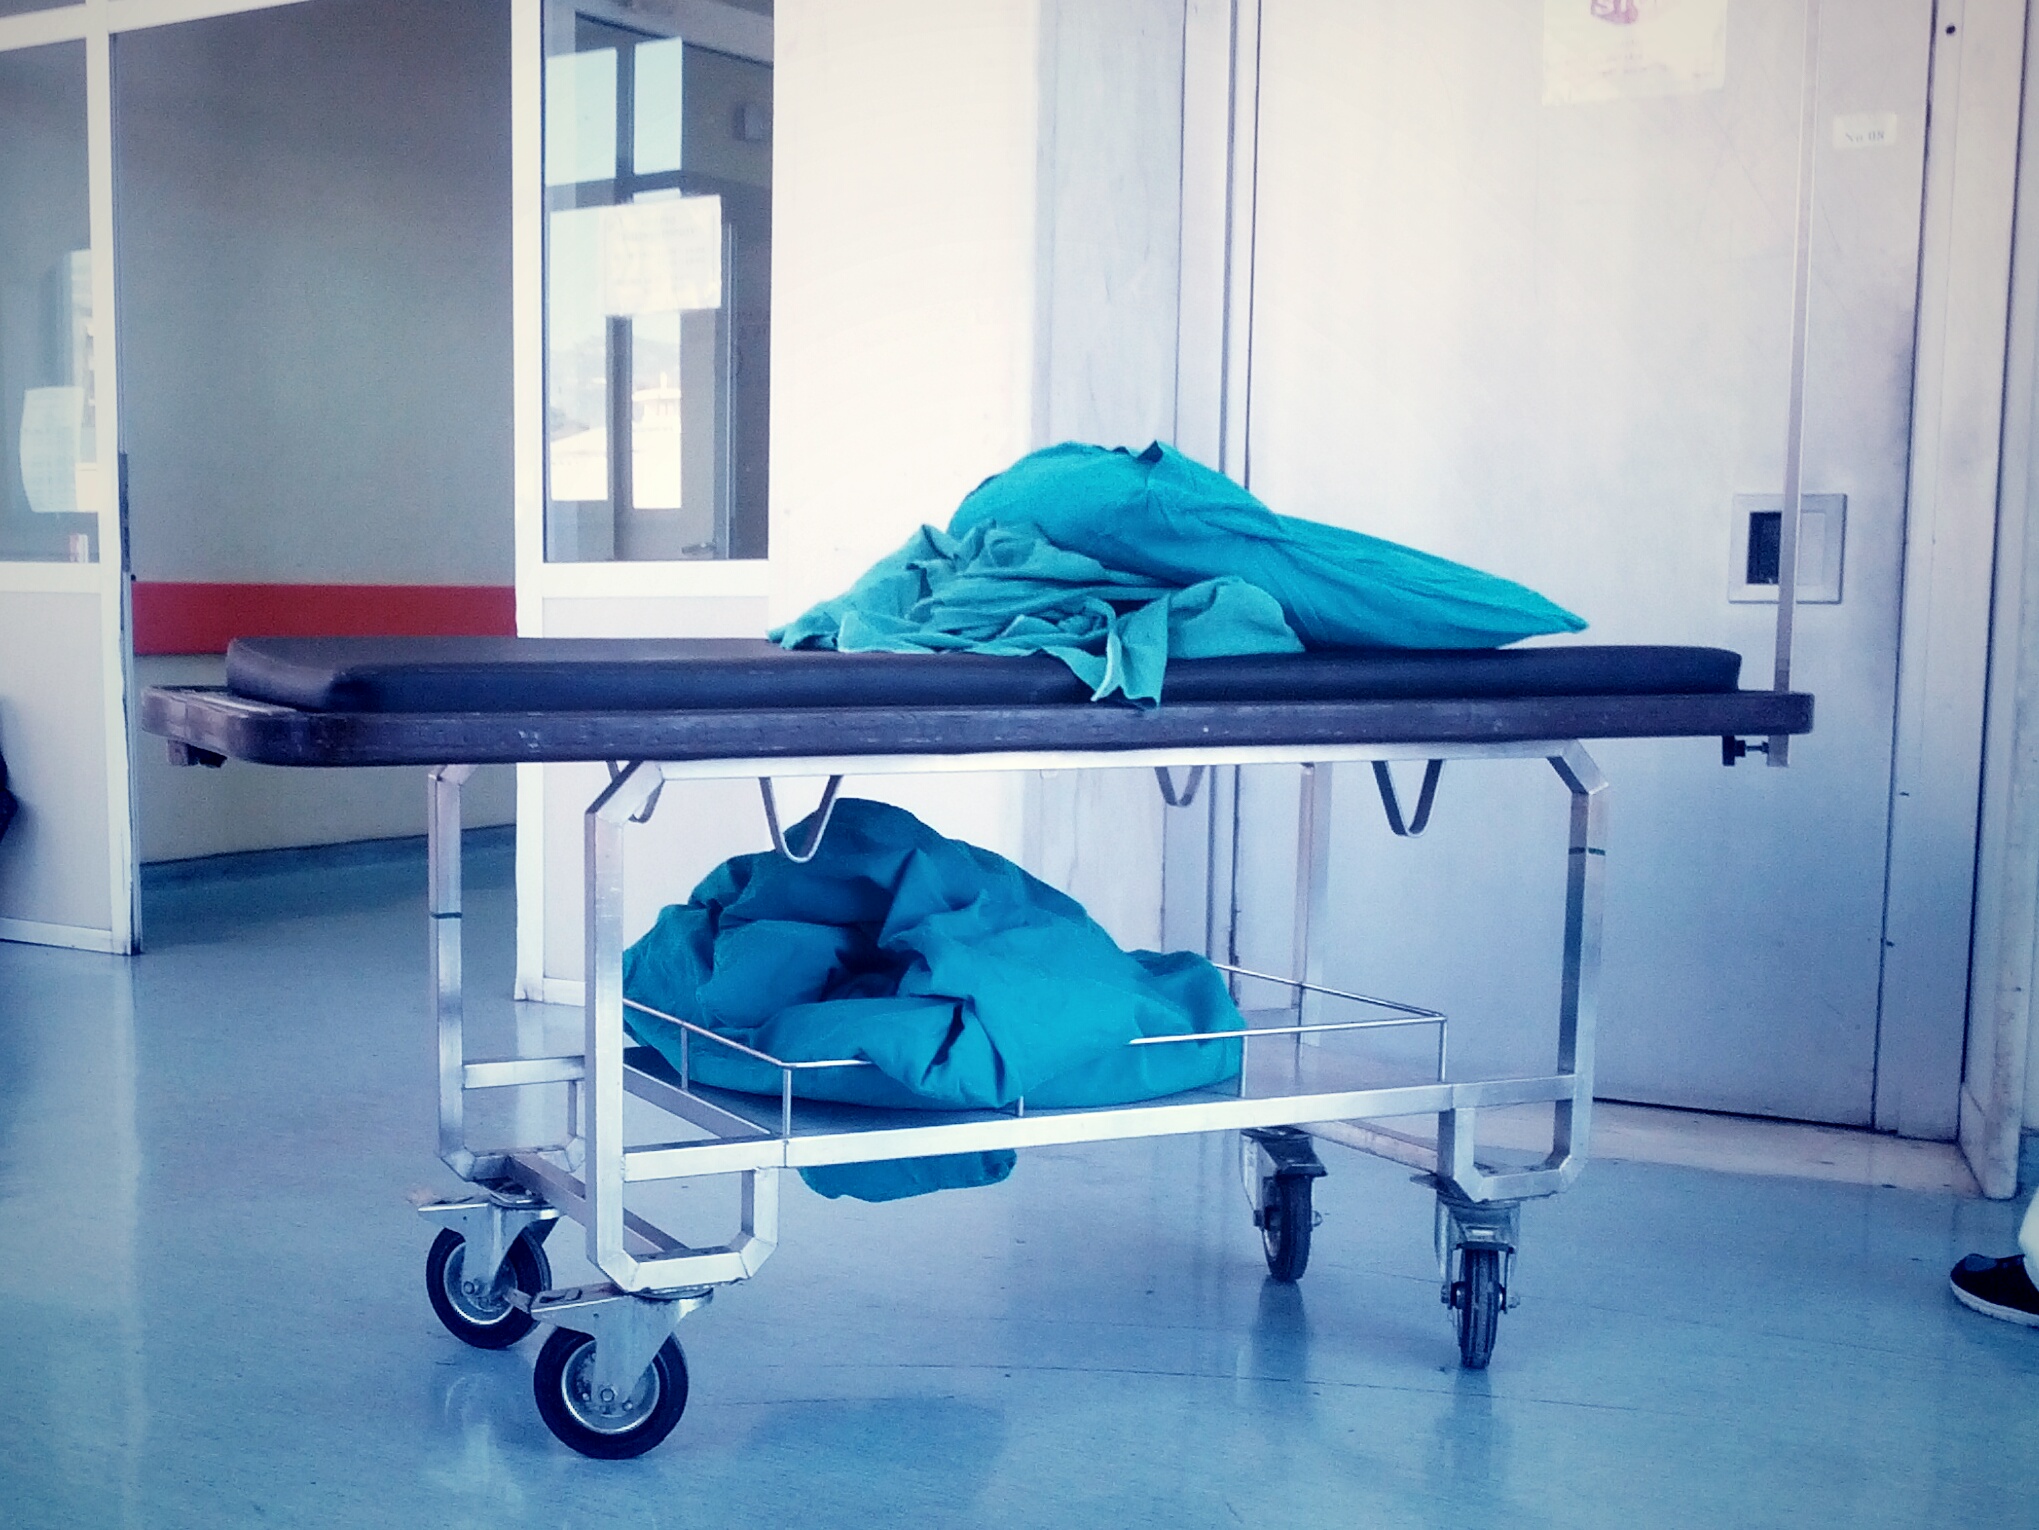 Θεσσαλονίκη: Ξέχασαν βελόνα 13 εκ. στην κοιλιά ασθενούς